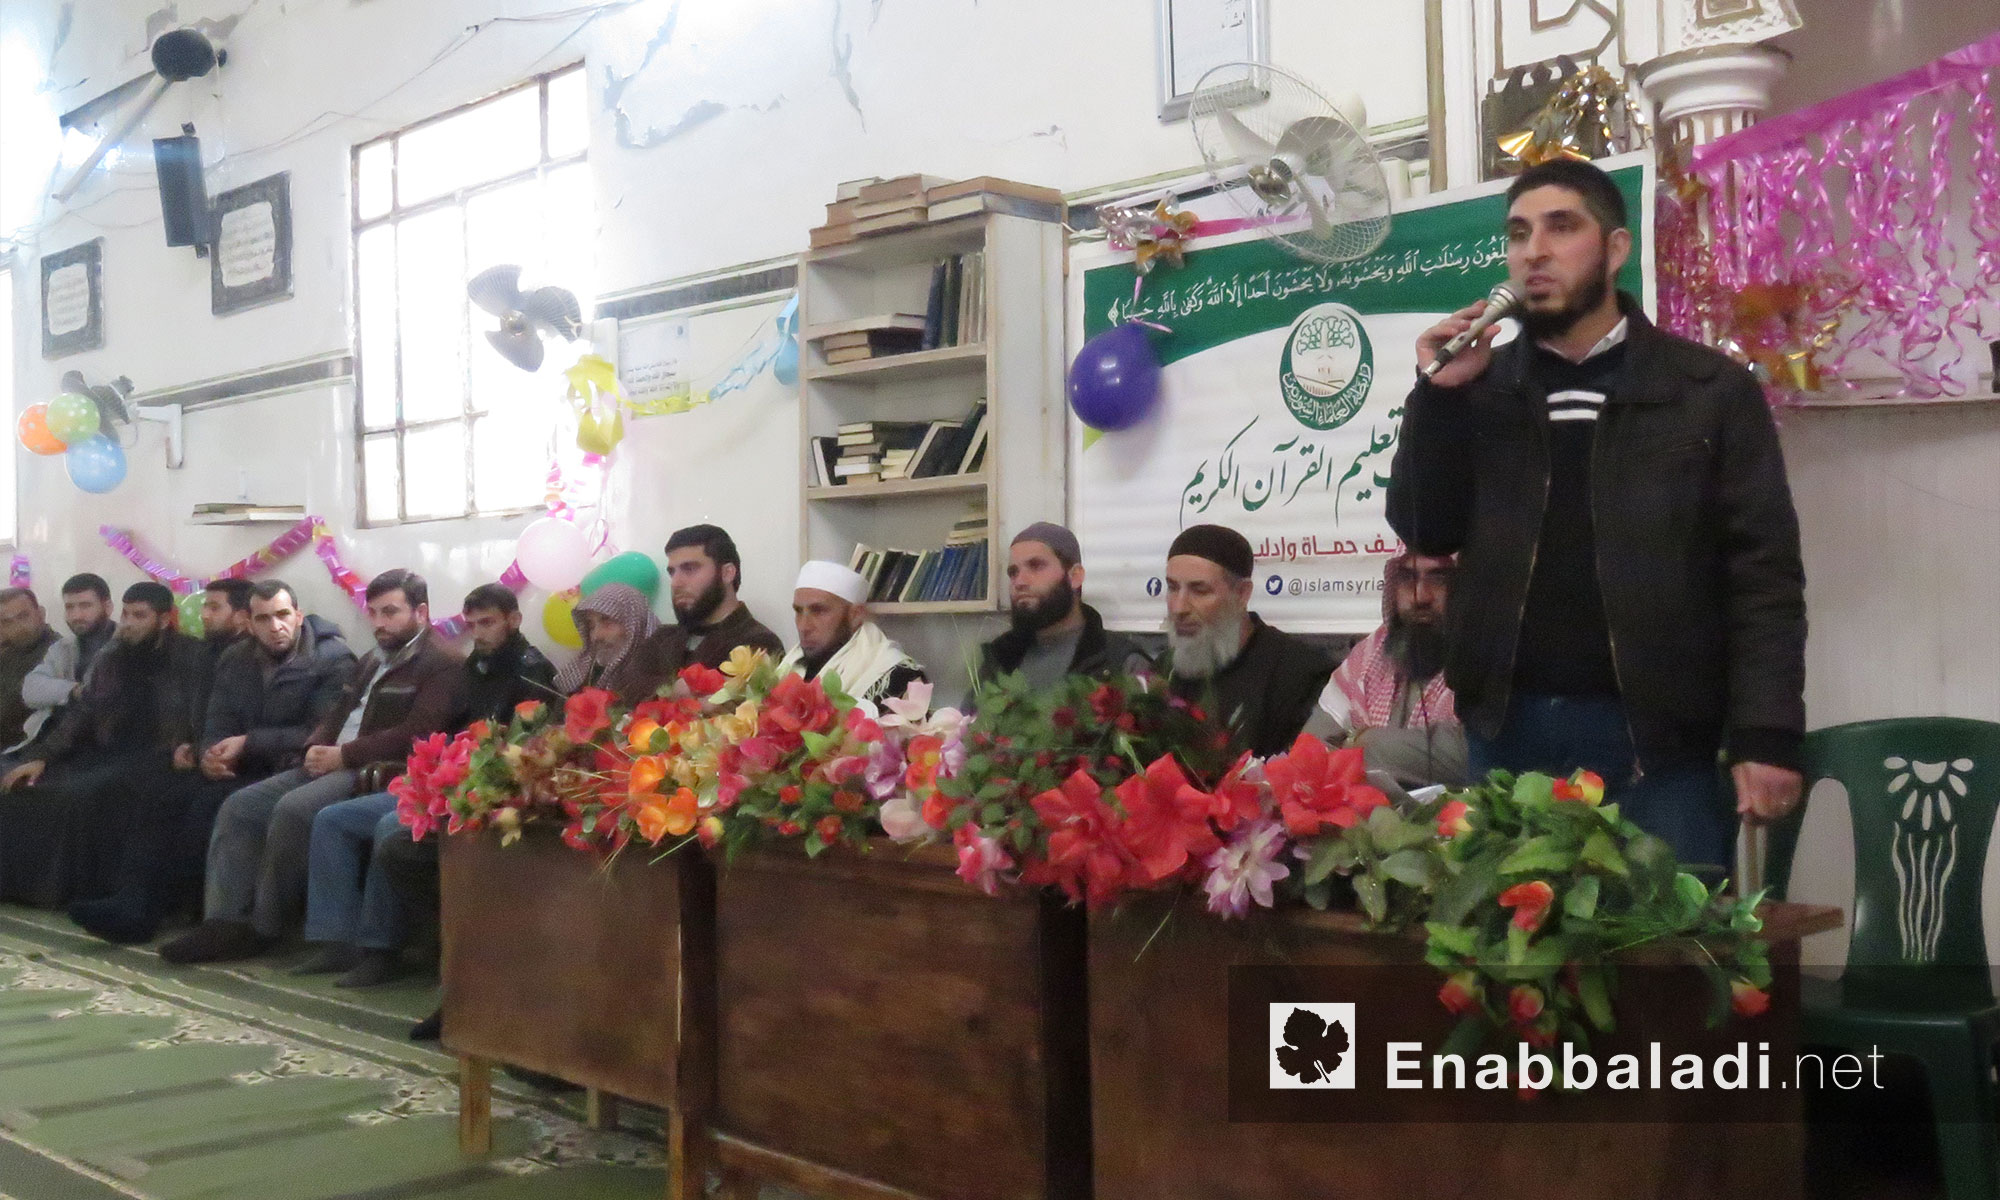  رابطة علماء السوريين  تكرم الطالبات المتوفقات في مشروعي الرشيدي والسفرة بريف ادلب الجنوبي - 30 تشرين الثاني 2017 (عنب بلدي)